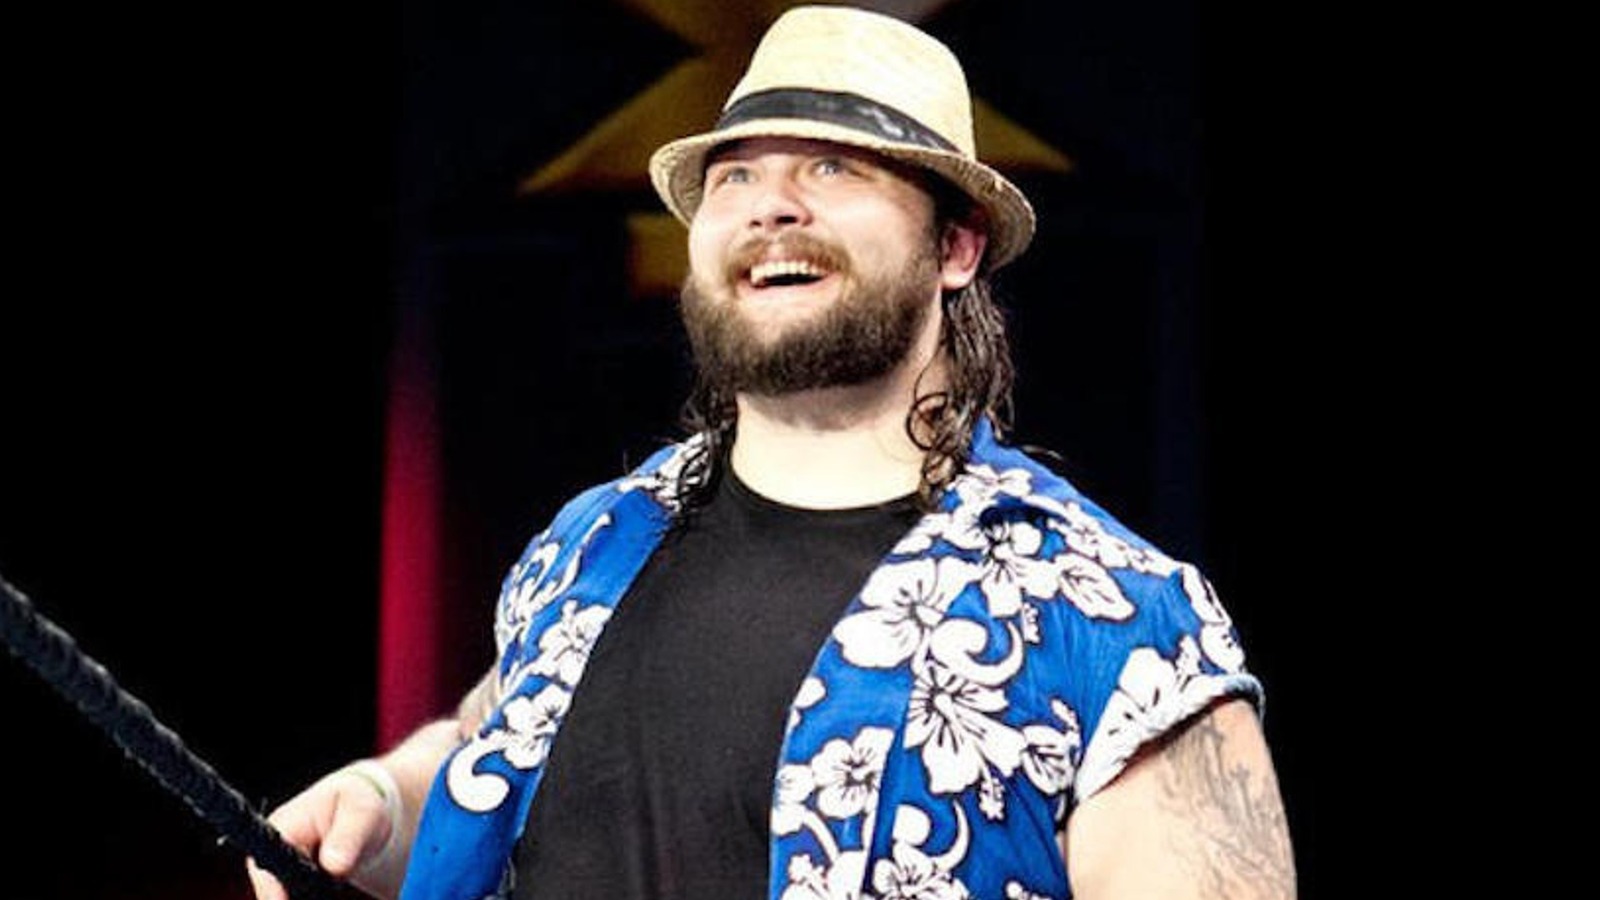 Bruce Prichard sobre la capacidad de Windham Rotunda para 'crear magia' en la WWE con Bray Wyatt